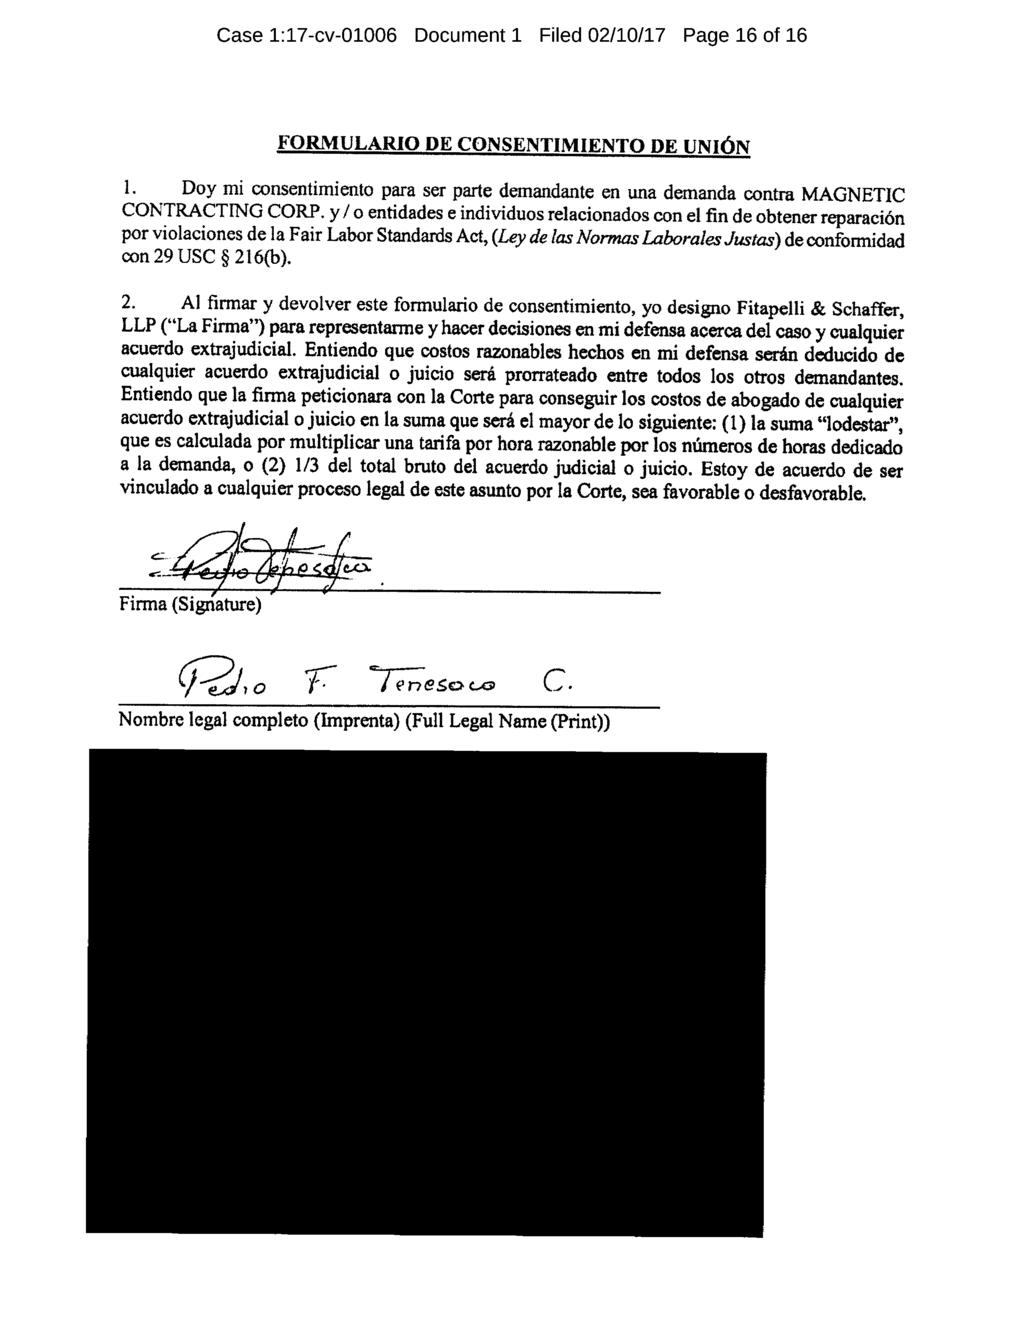 Case 1:17-cv-01006 Document 1 Filed 02/10/17 Page 16 of 16 FORMULARIO DE CONSENTIMIENTO DE UNION 1. Doy mi consentimiento para ser parte demandante en una demanda contra MAGNETIC CONTRACTING CORP.